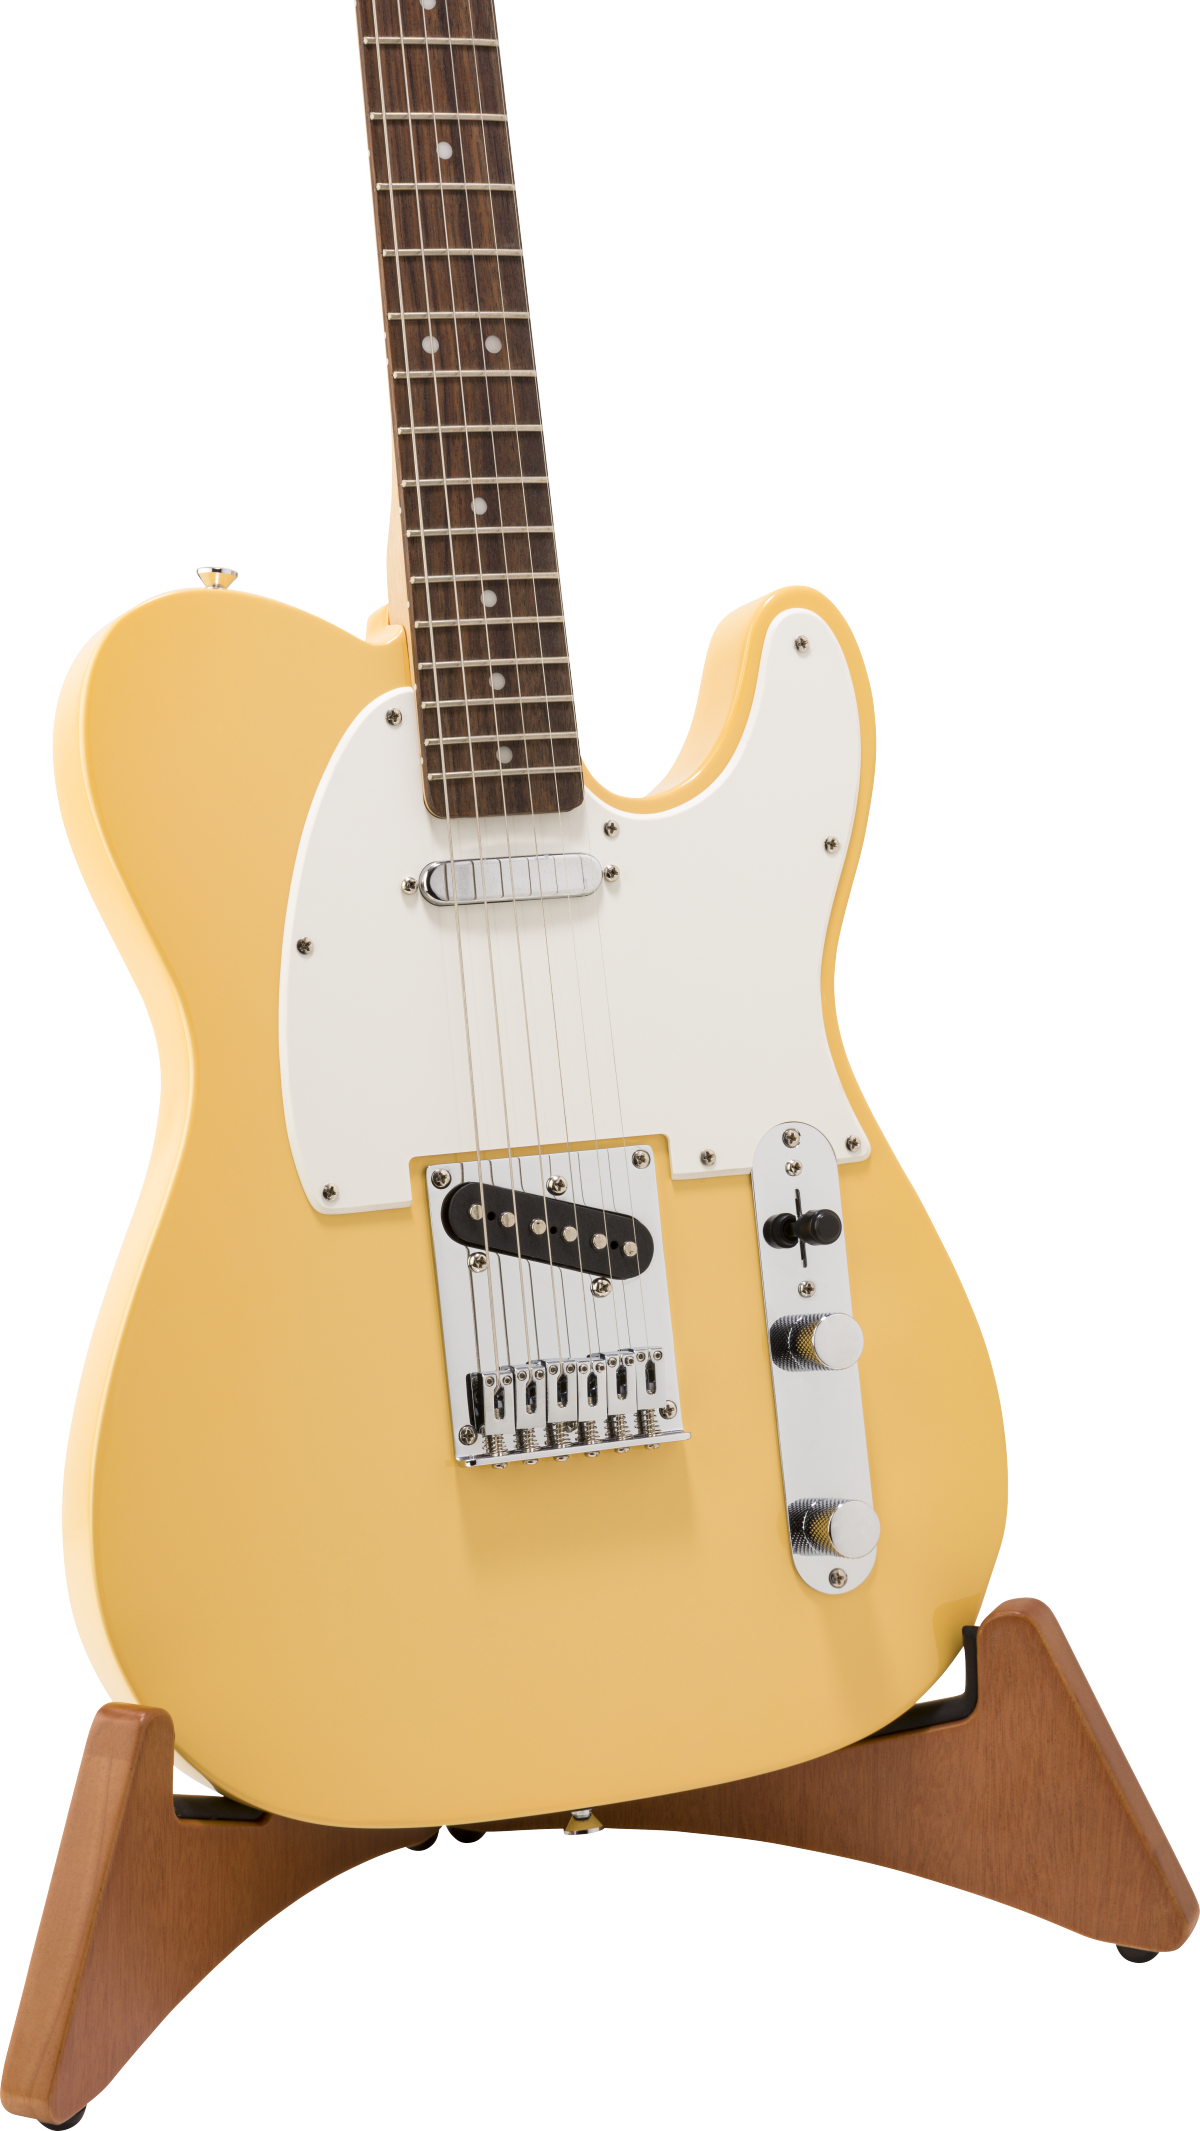 Fender Timberframe Electric Guitar Stand - Gitaarstandaard - Variation 2